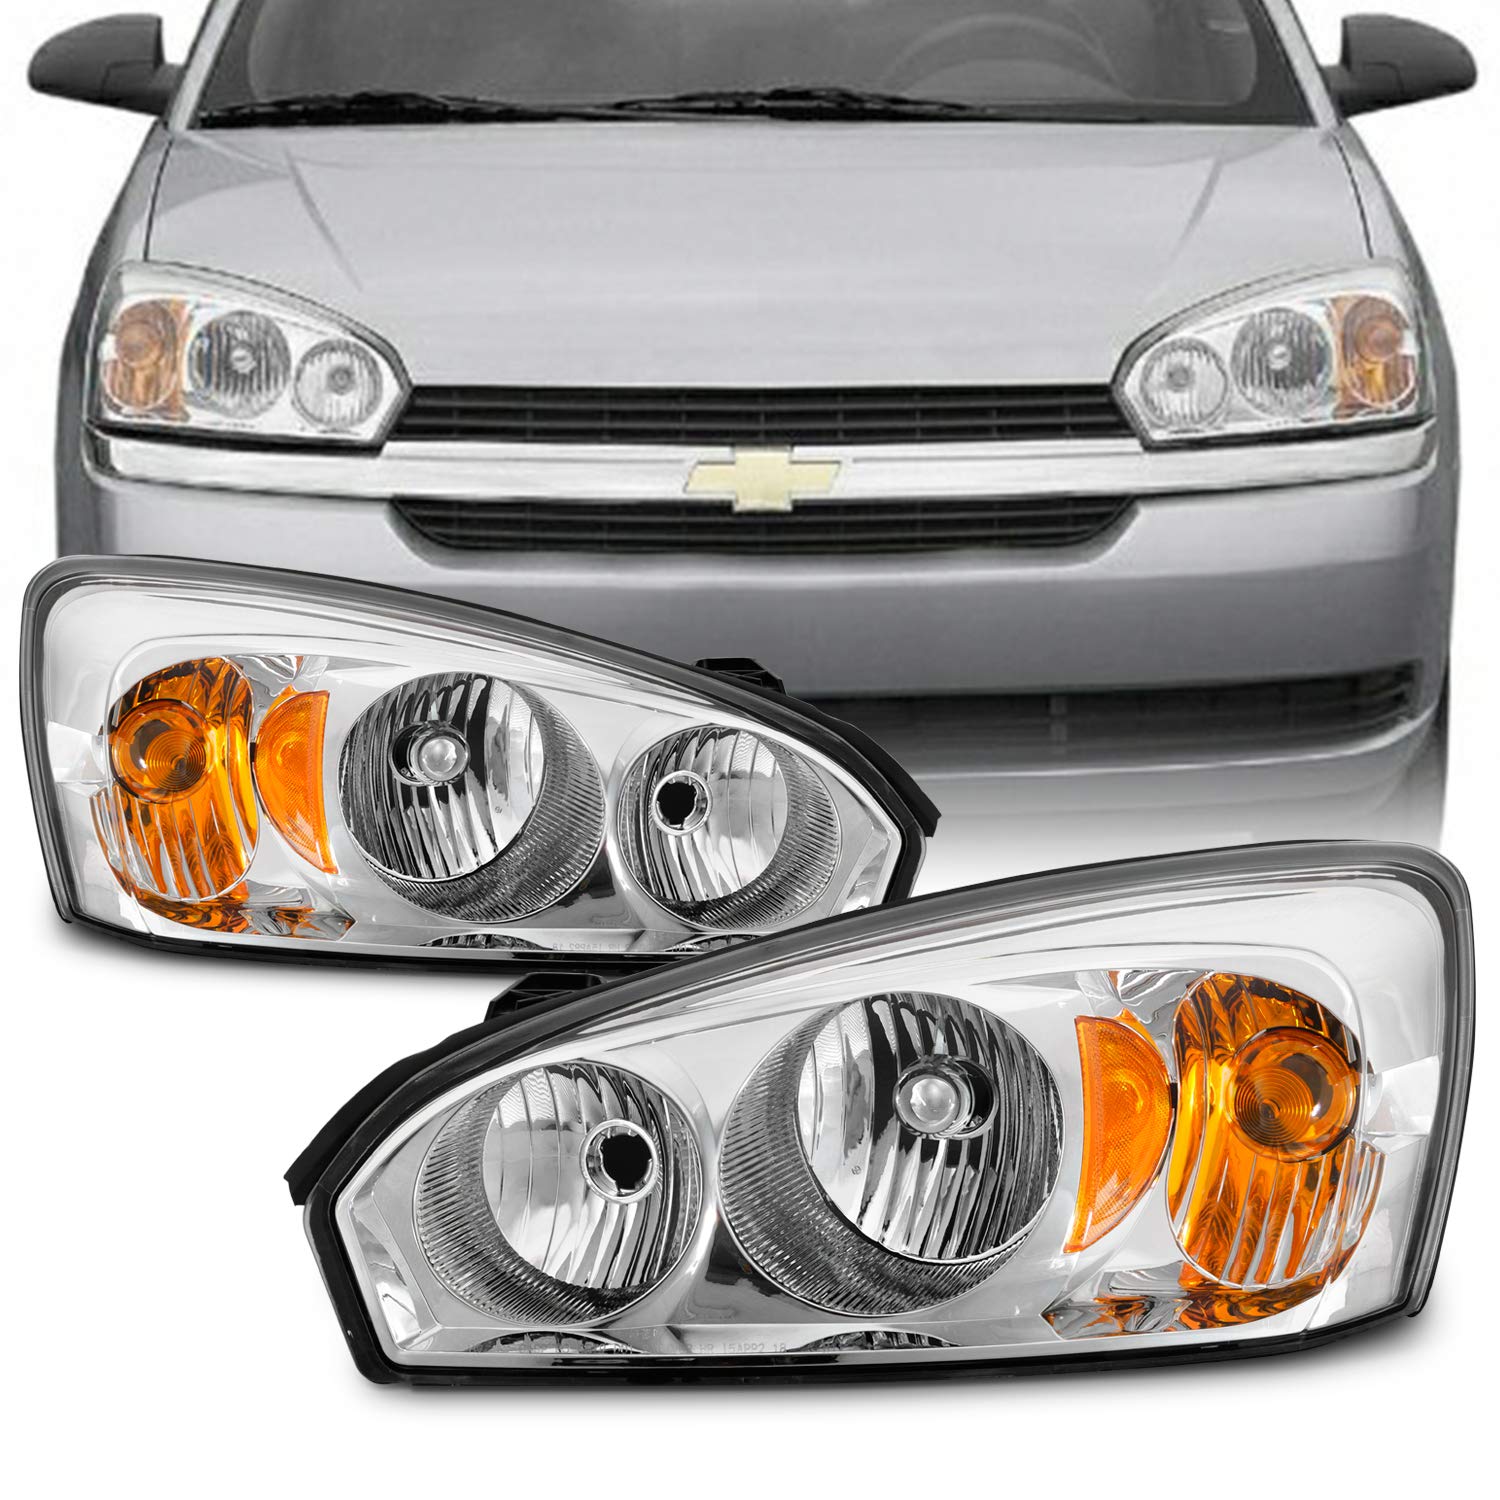 AKKON - Fits 2004-2007 Chevy Malibu 2008 Malibu Classic Model [OE Style]  Headlight Driver+Passenger Pair Headlamp